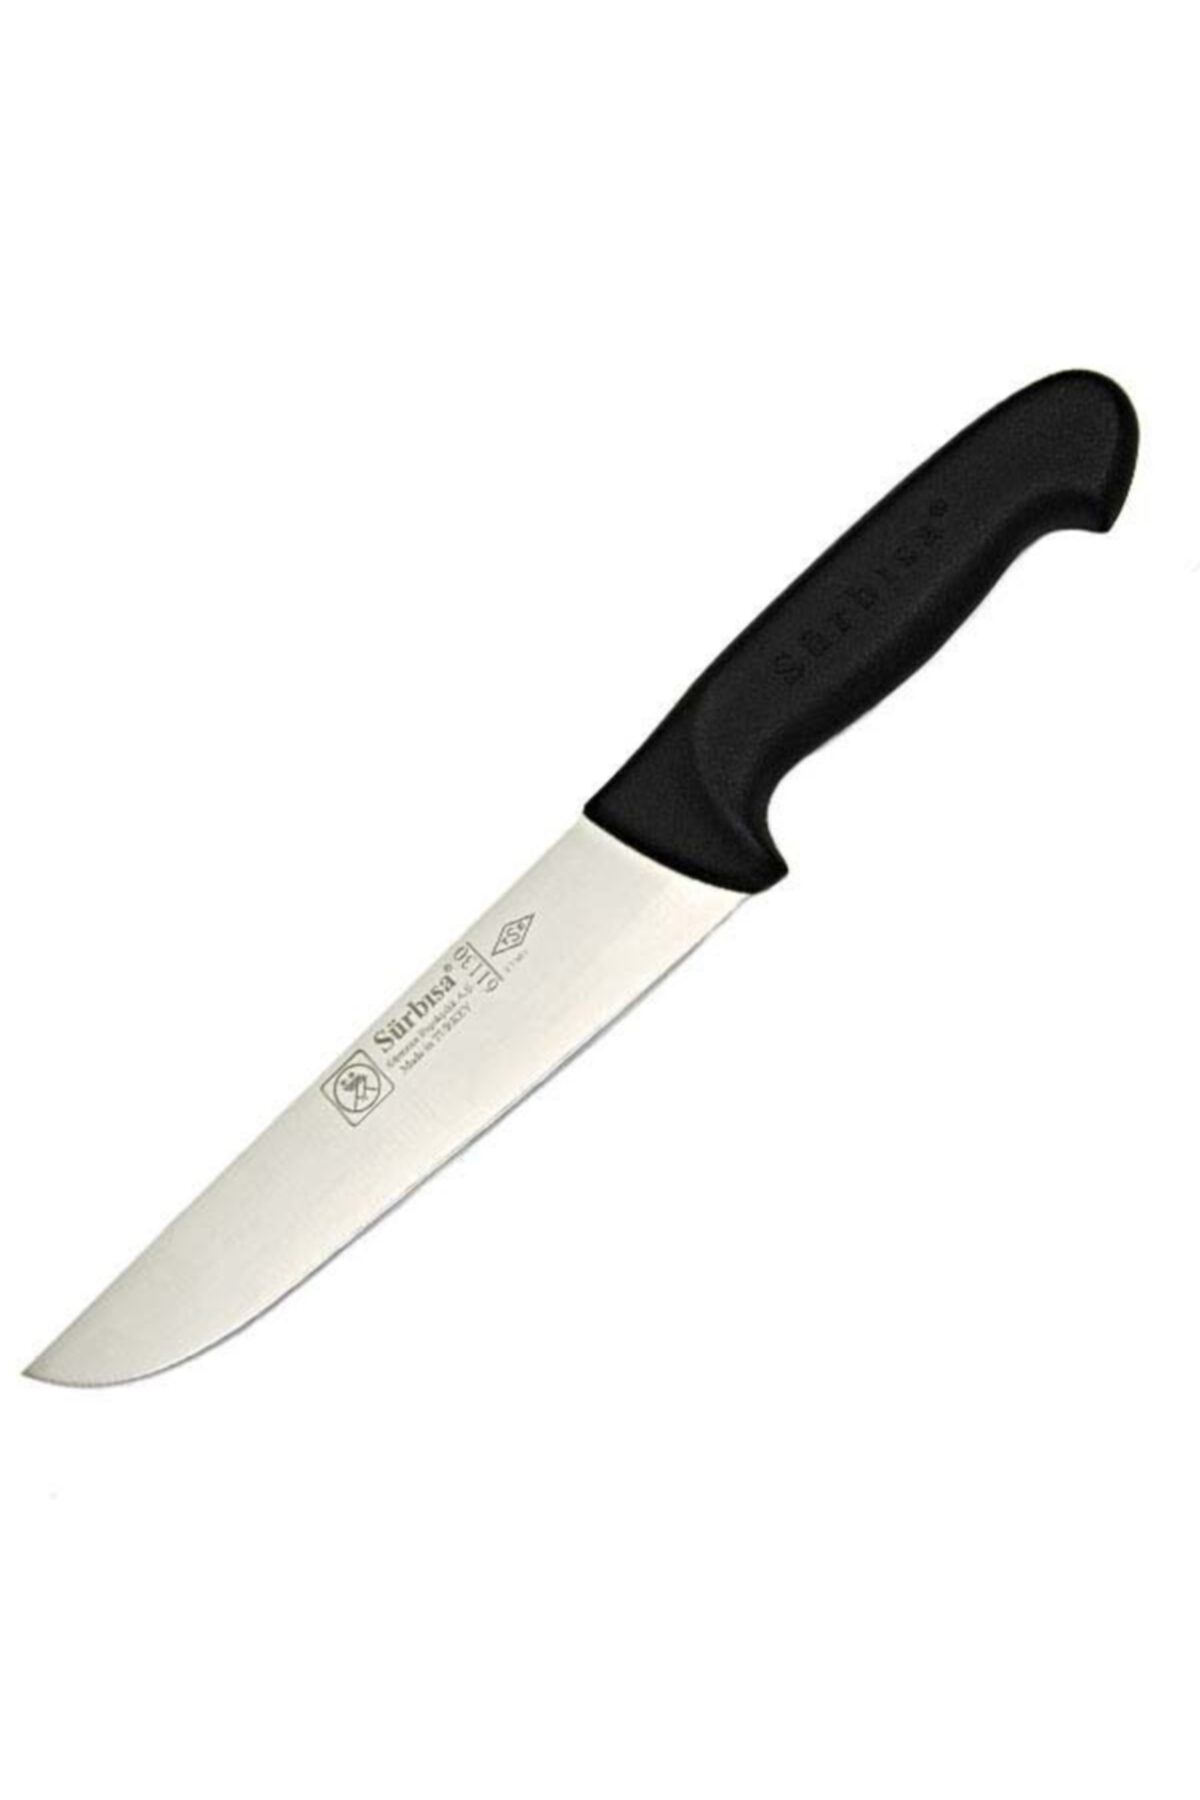 Genel Markalar Sürbisa Kasap Bıçağı Plastik Saplı 61130